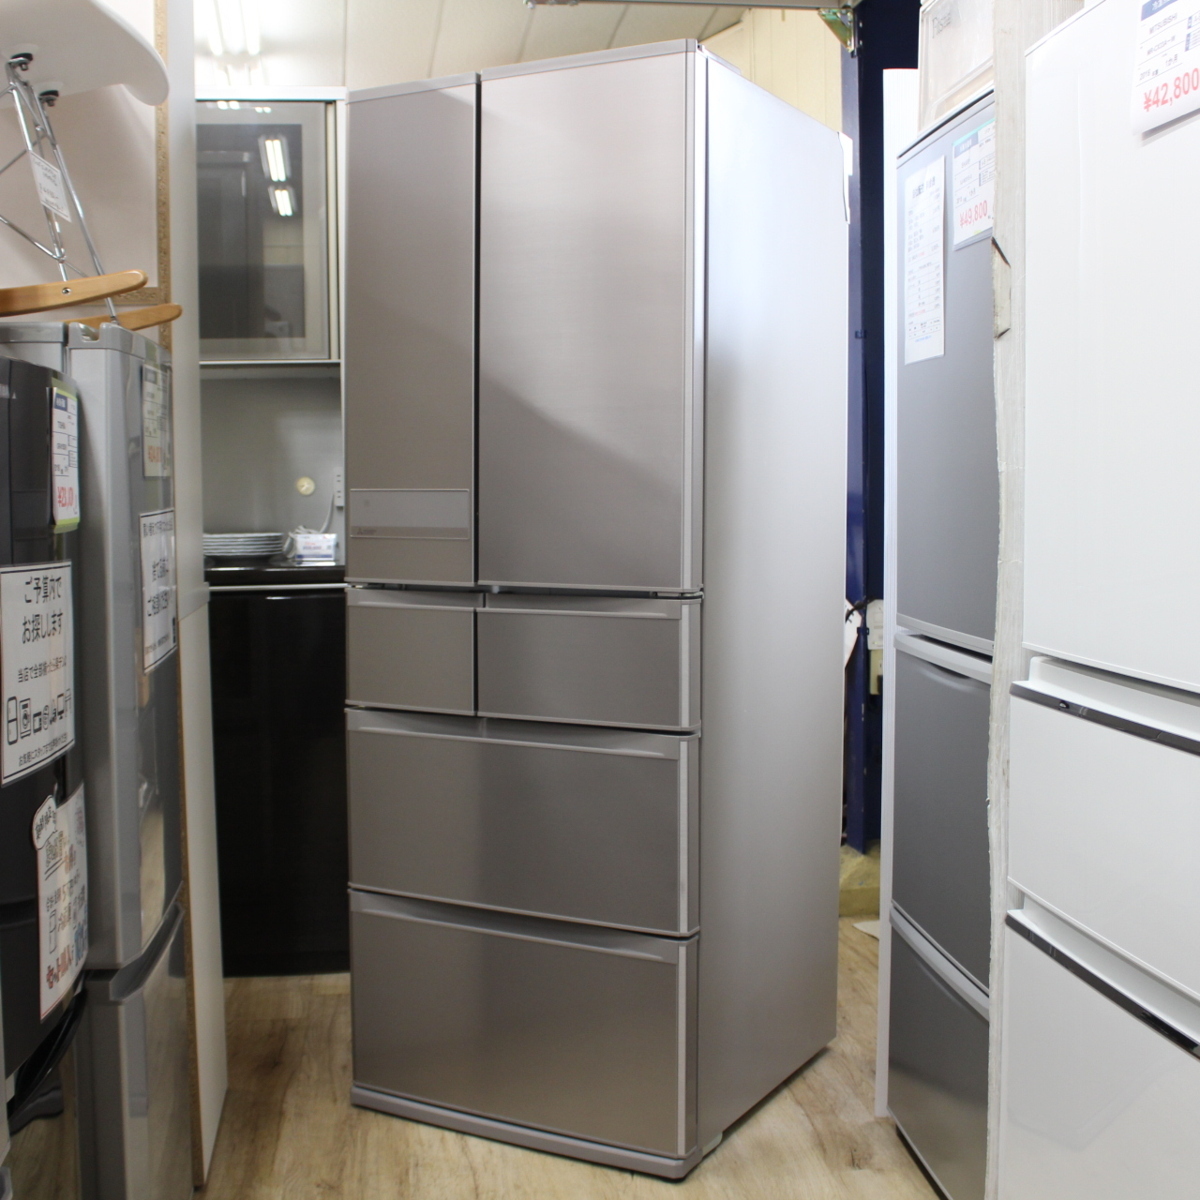 三菱 600L 大容量 フレンチドア冷凍冷蔵庫 MR-JX61Z-N1 - 川崎市・横浜